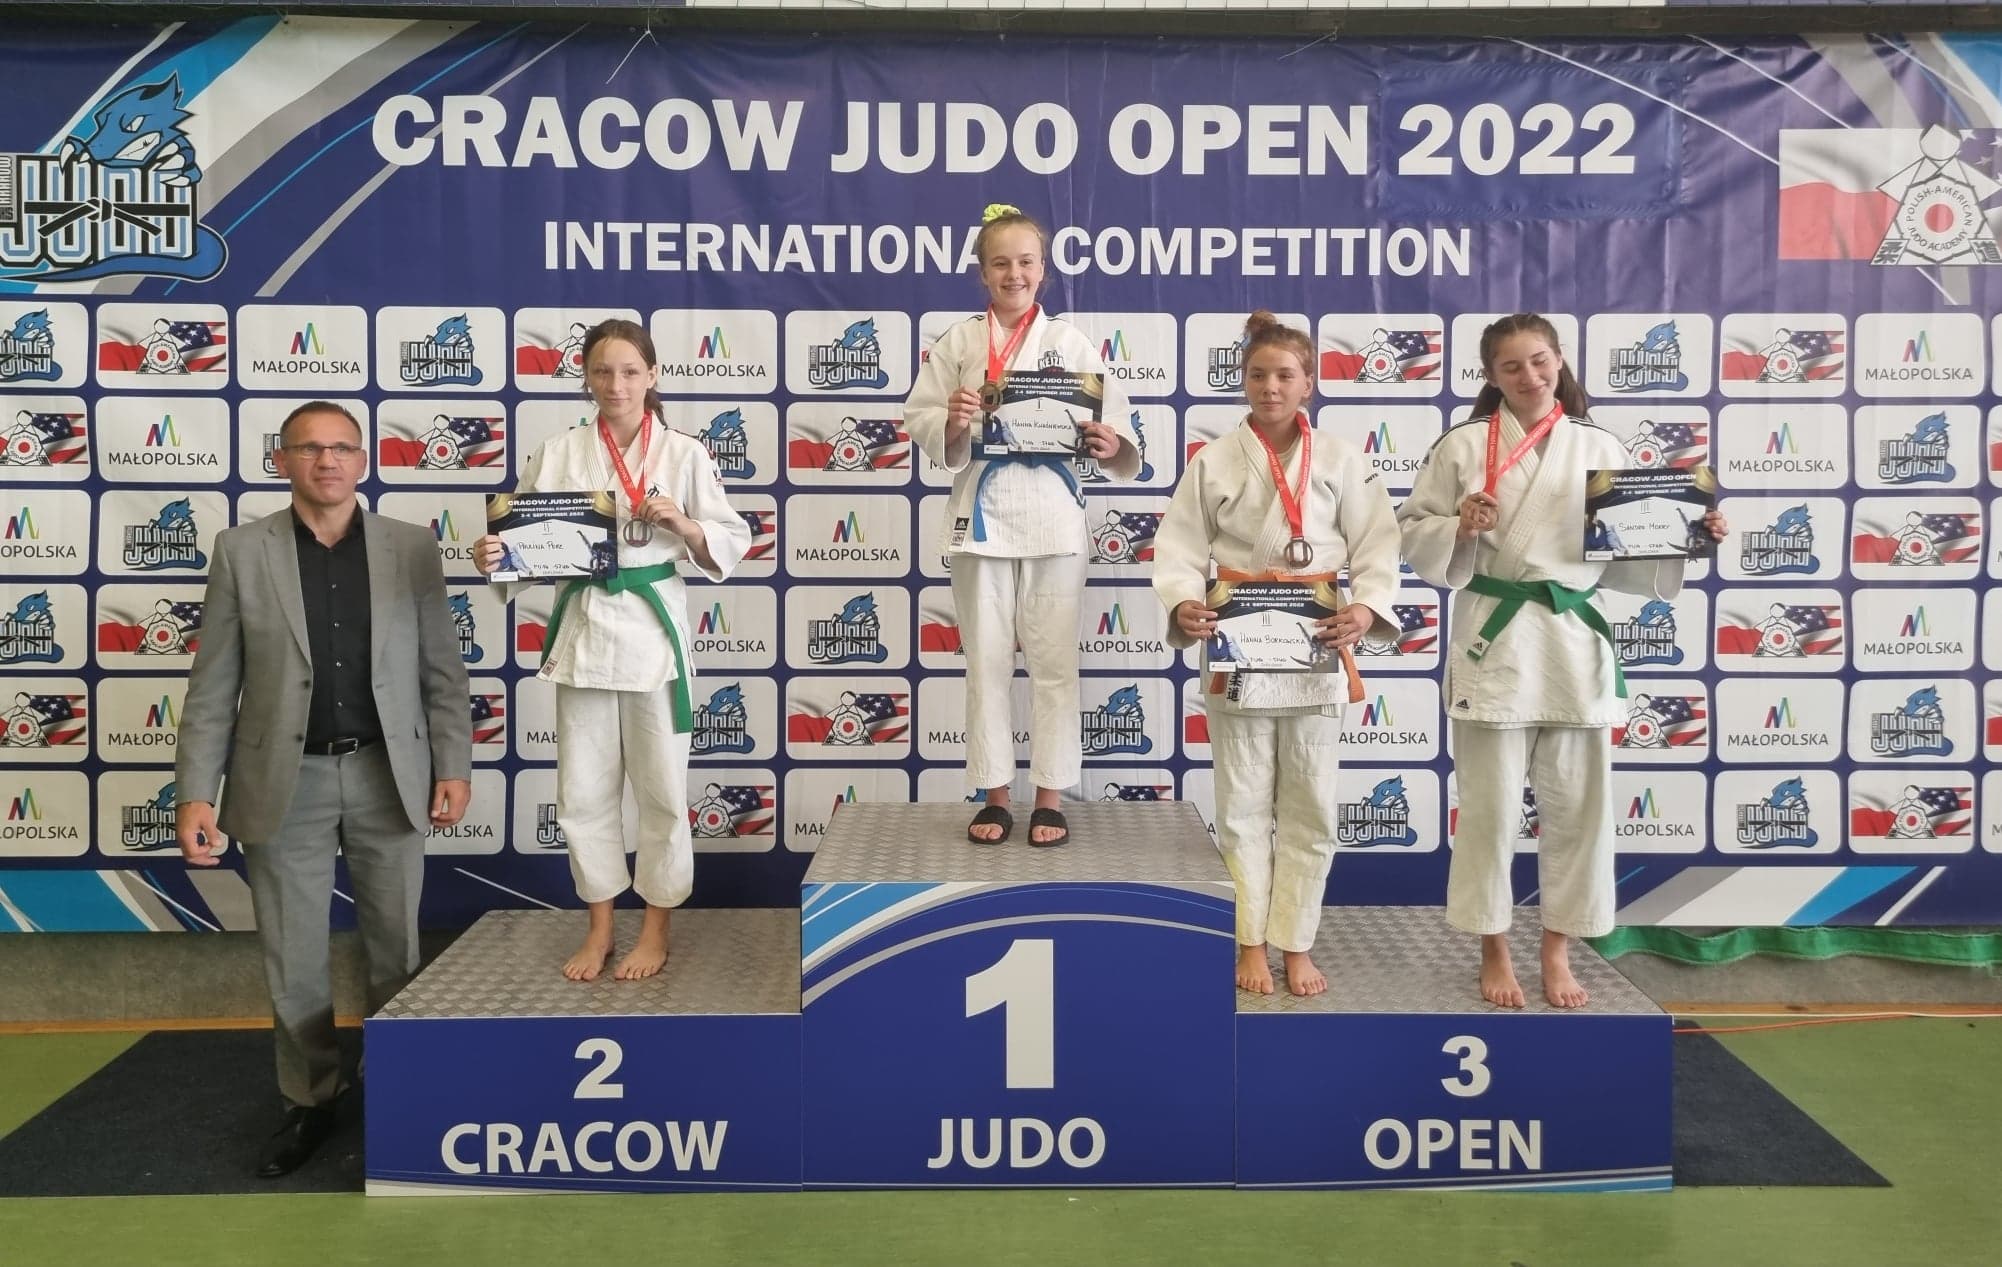 Cracow Judo Open 2022